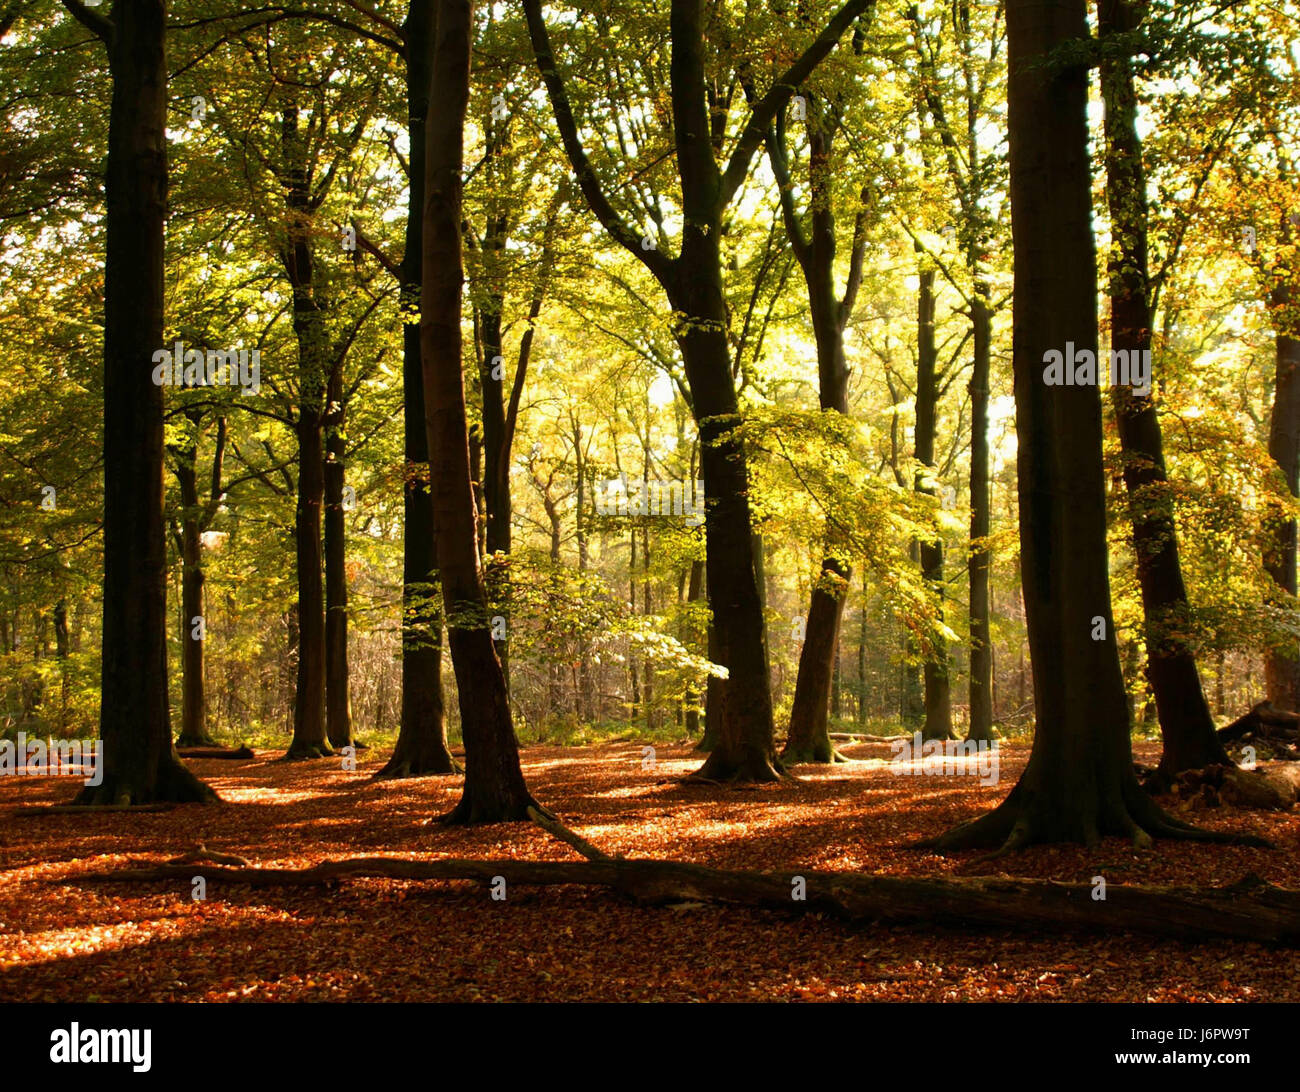 Bruno marrone brunette impianti succursale colore vernice colorata foresta autunno autunno Foto Stock